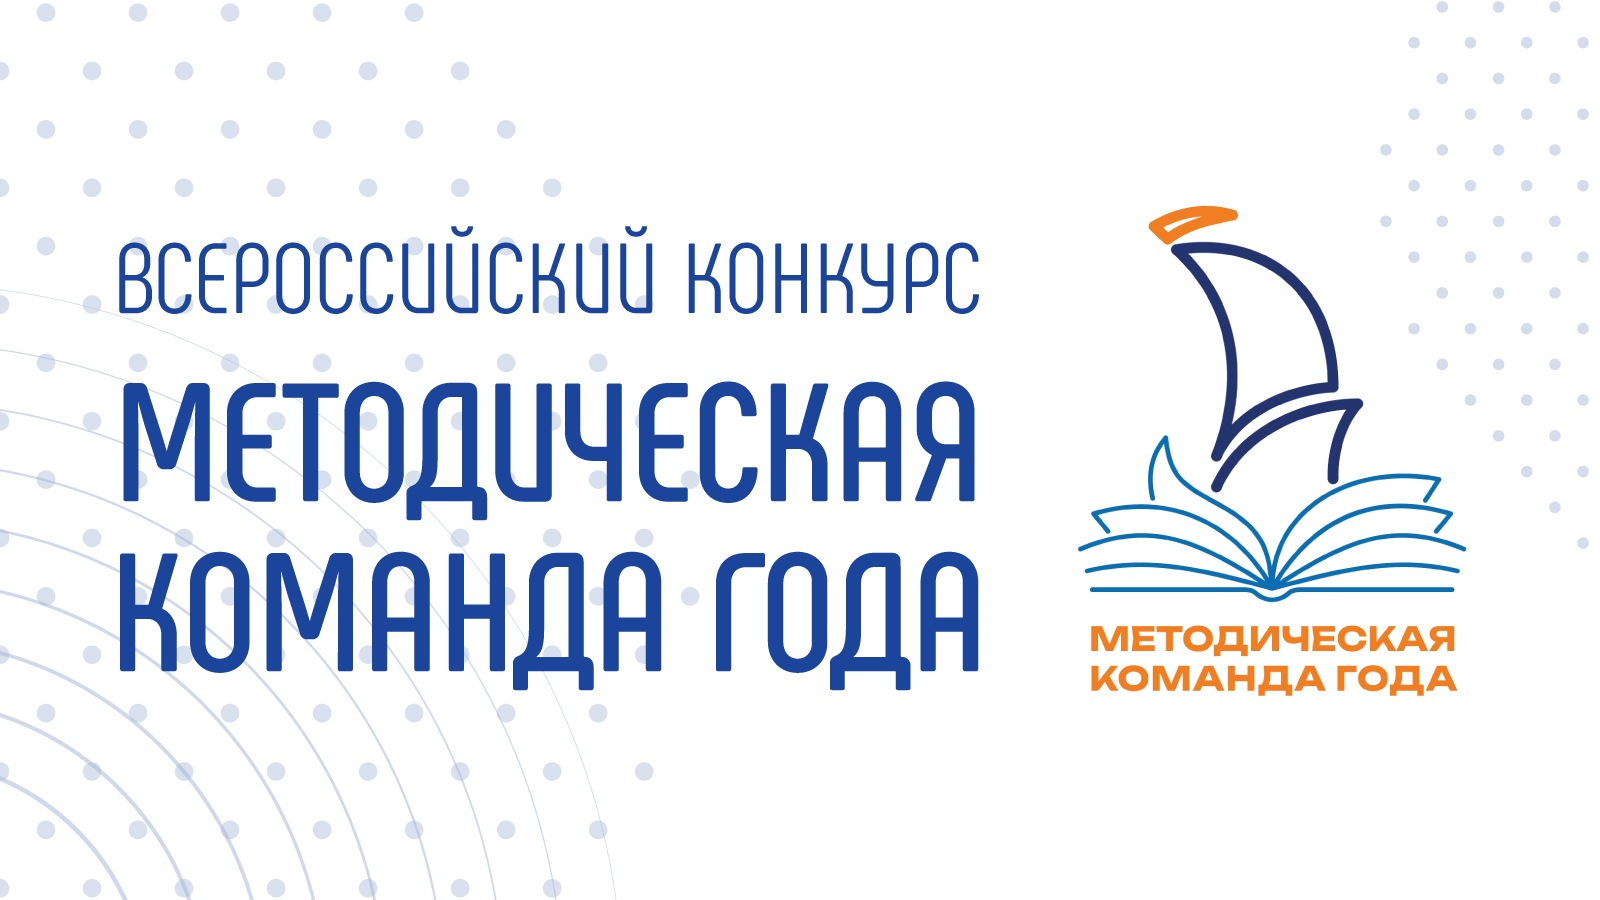 Установочный вебинар Всероссийского конкурса «Методическая команда года» пройдет 12 января